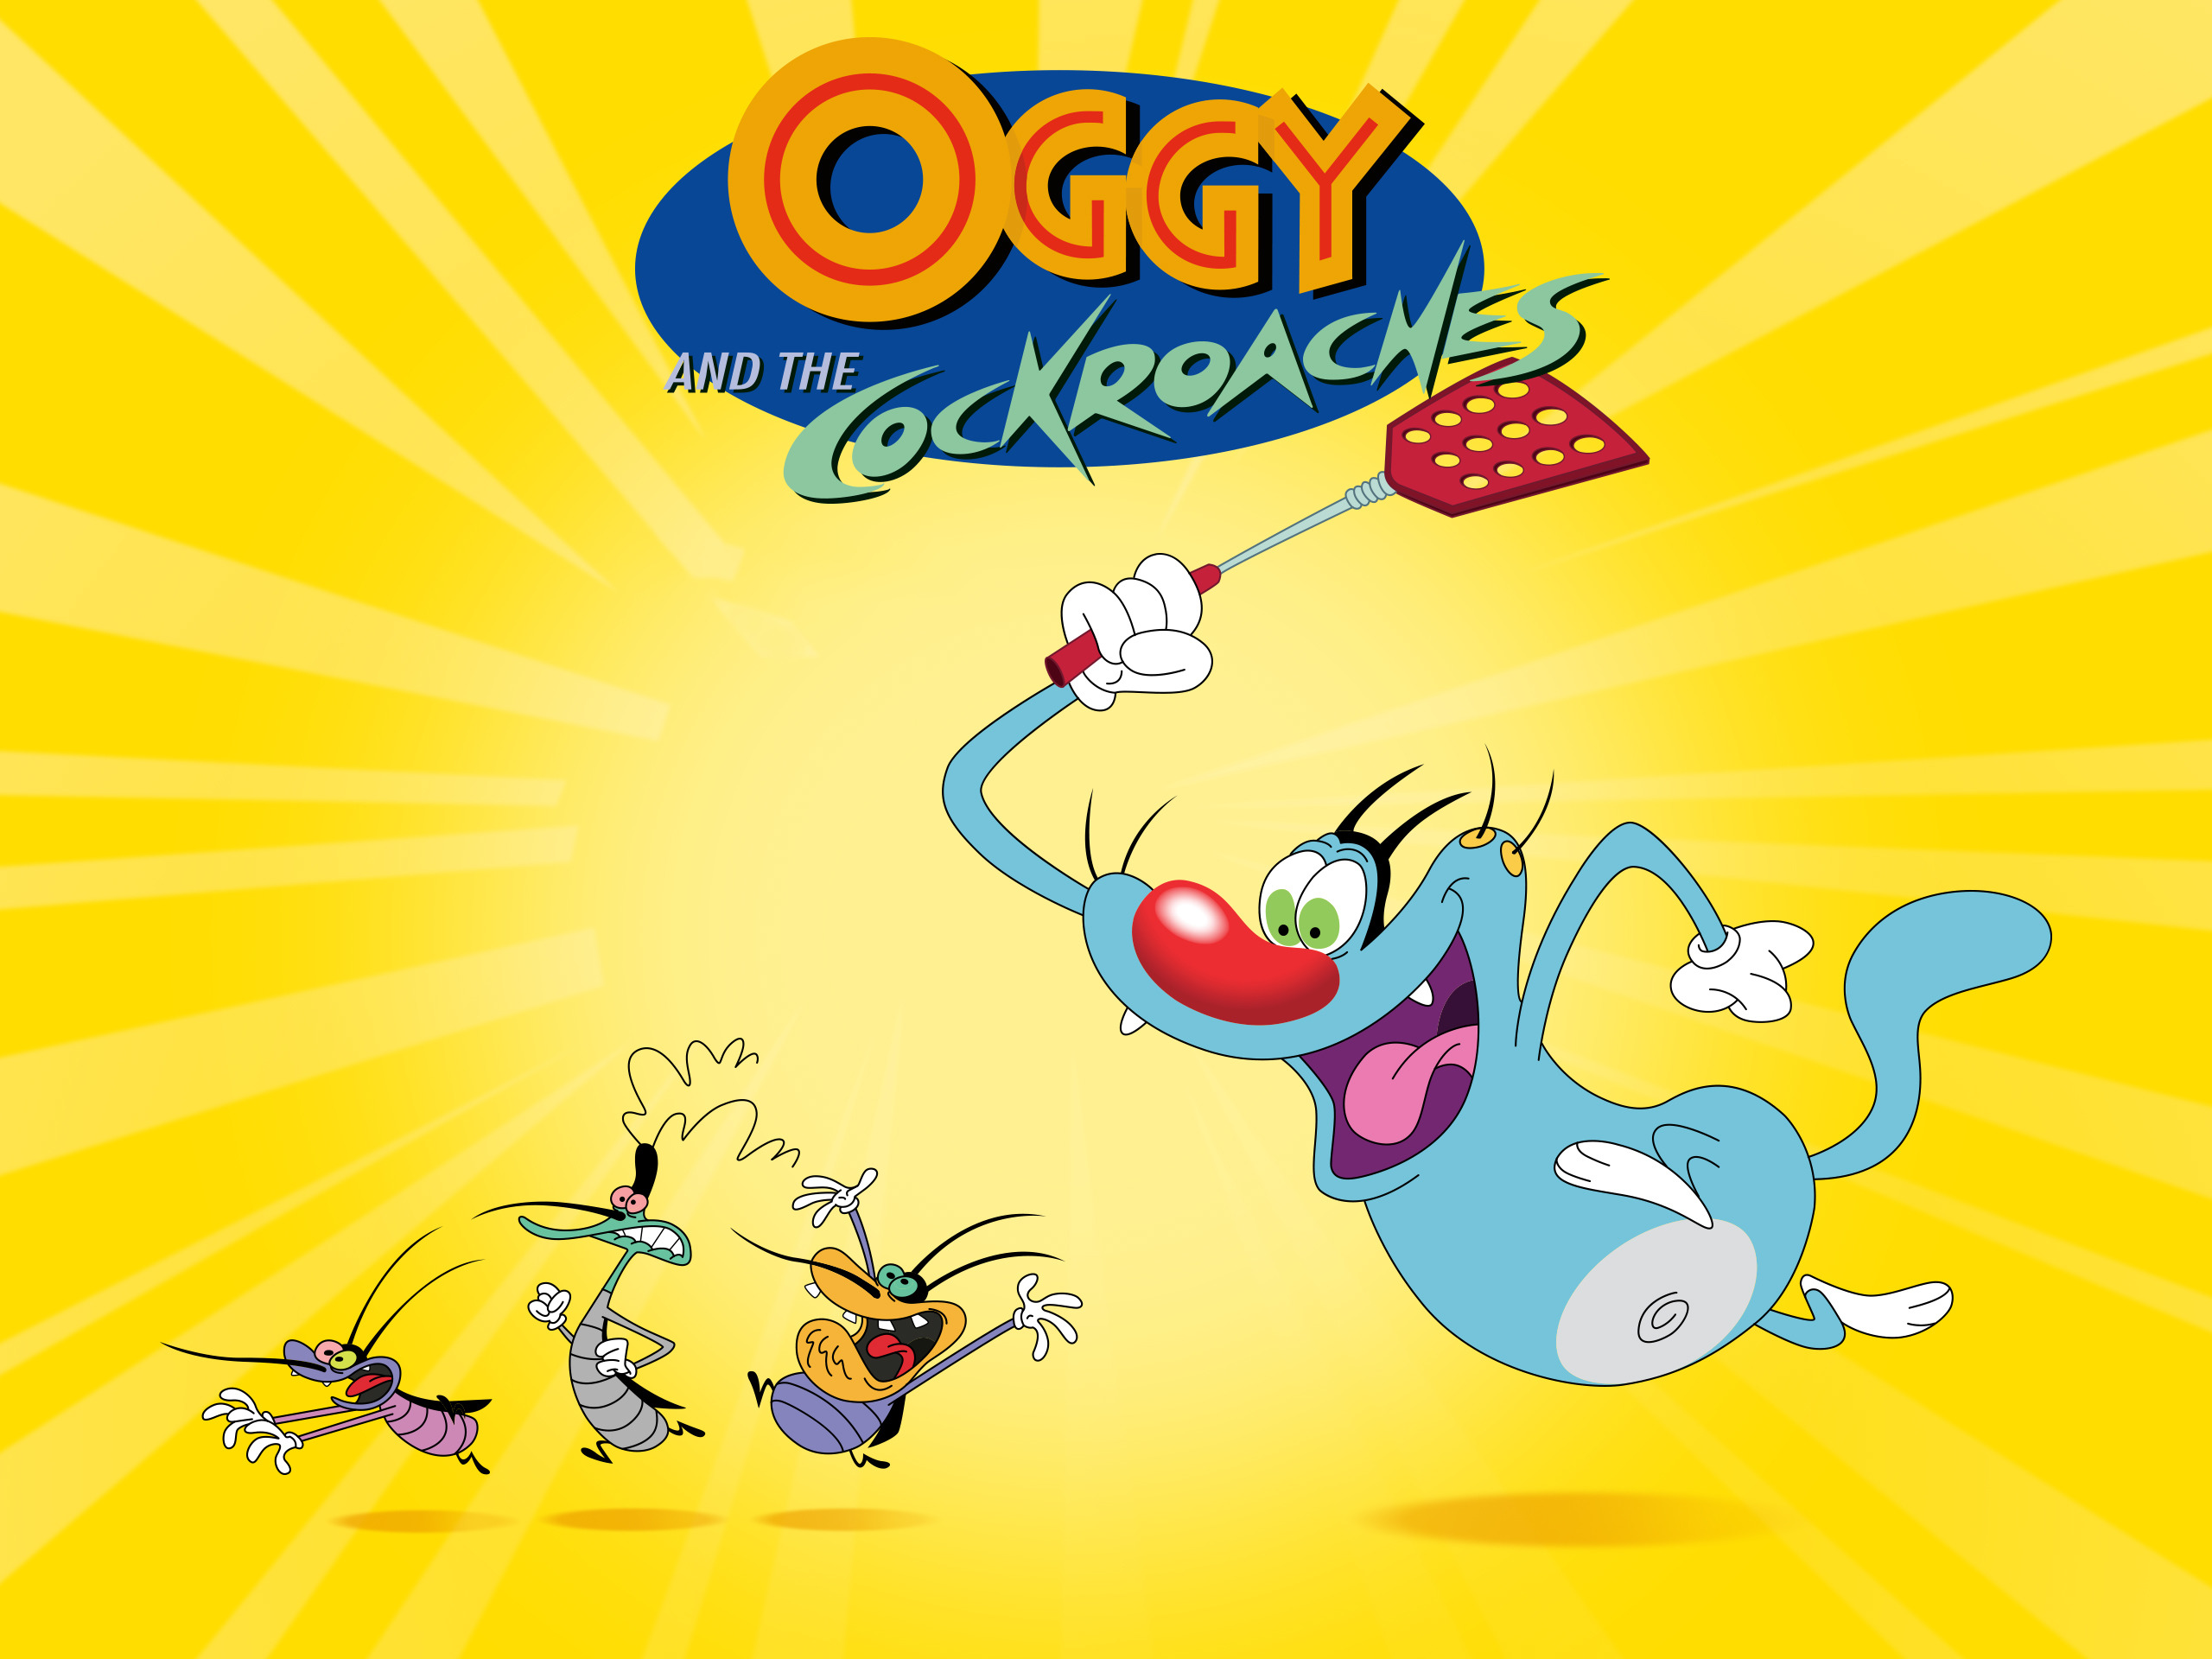 Oggy tinh nghịch: Oggy là một chú mèo tinh nghịch và luôn mang lại tiếng cười cho khán giả. Xem hình ảnh liên quan để thấy Oggy làm nhiều trò đùa thú vị.